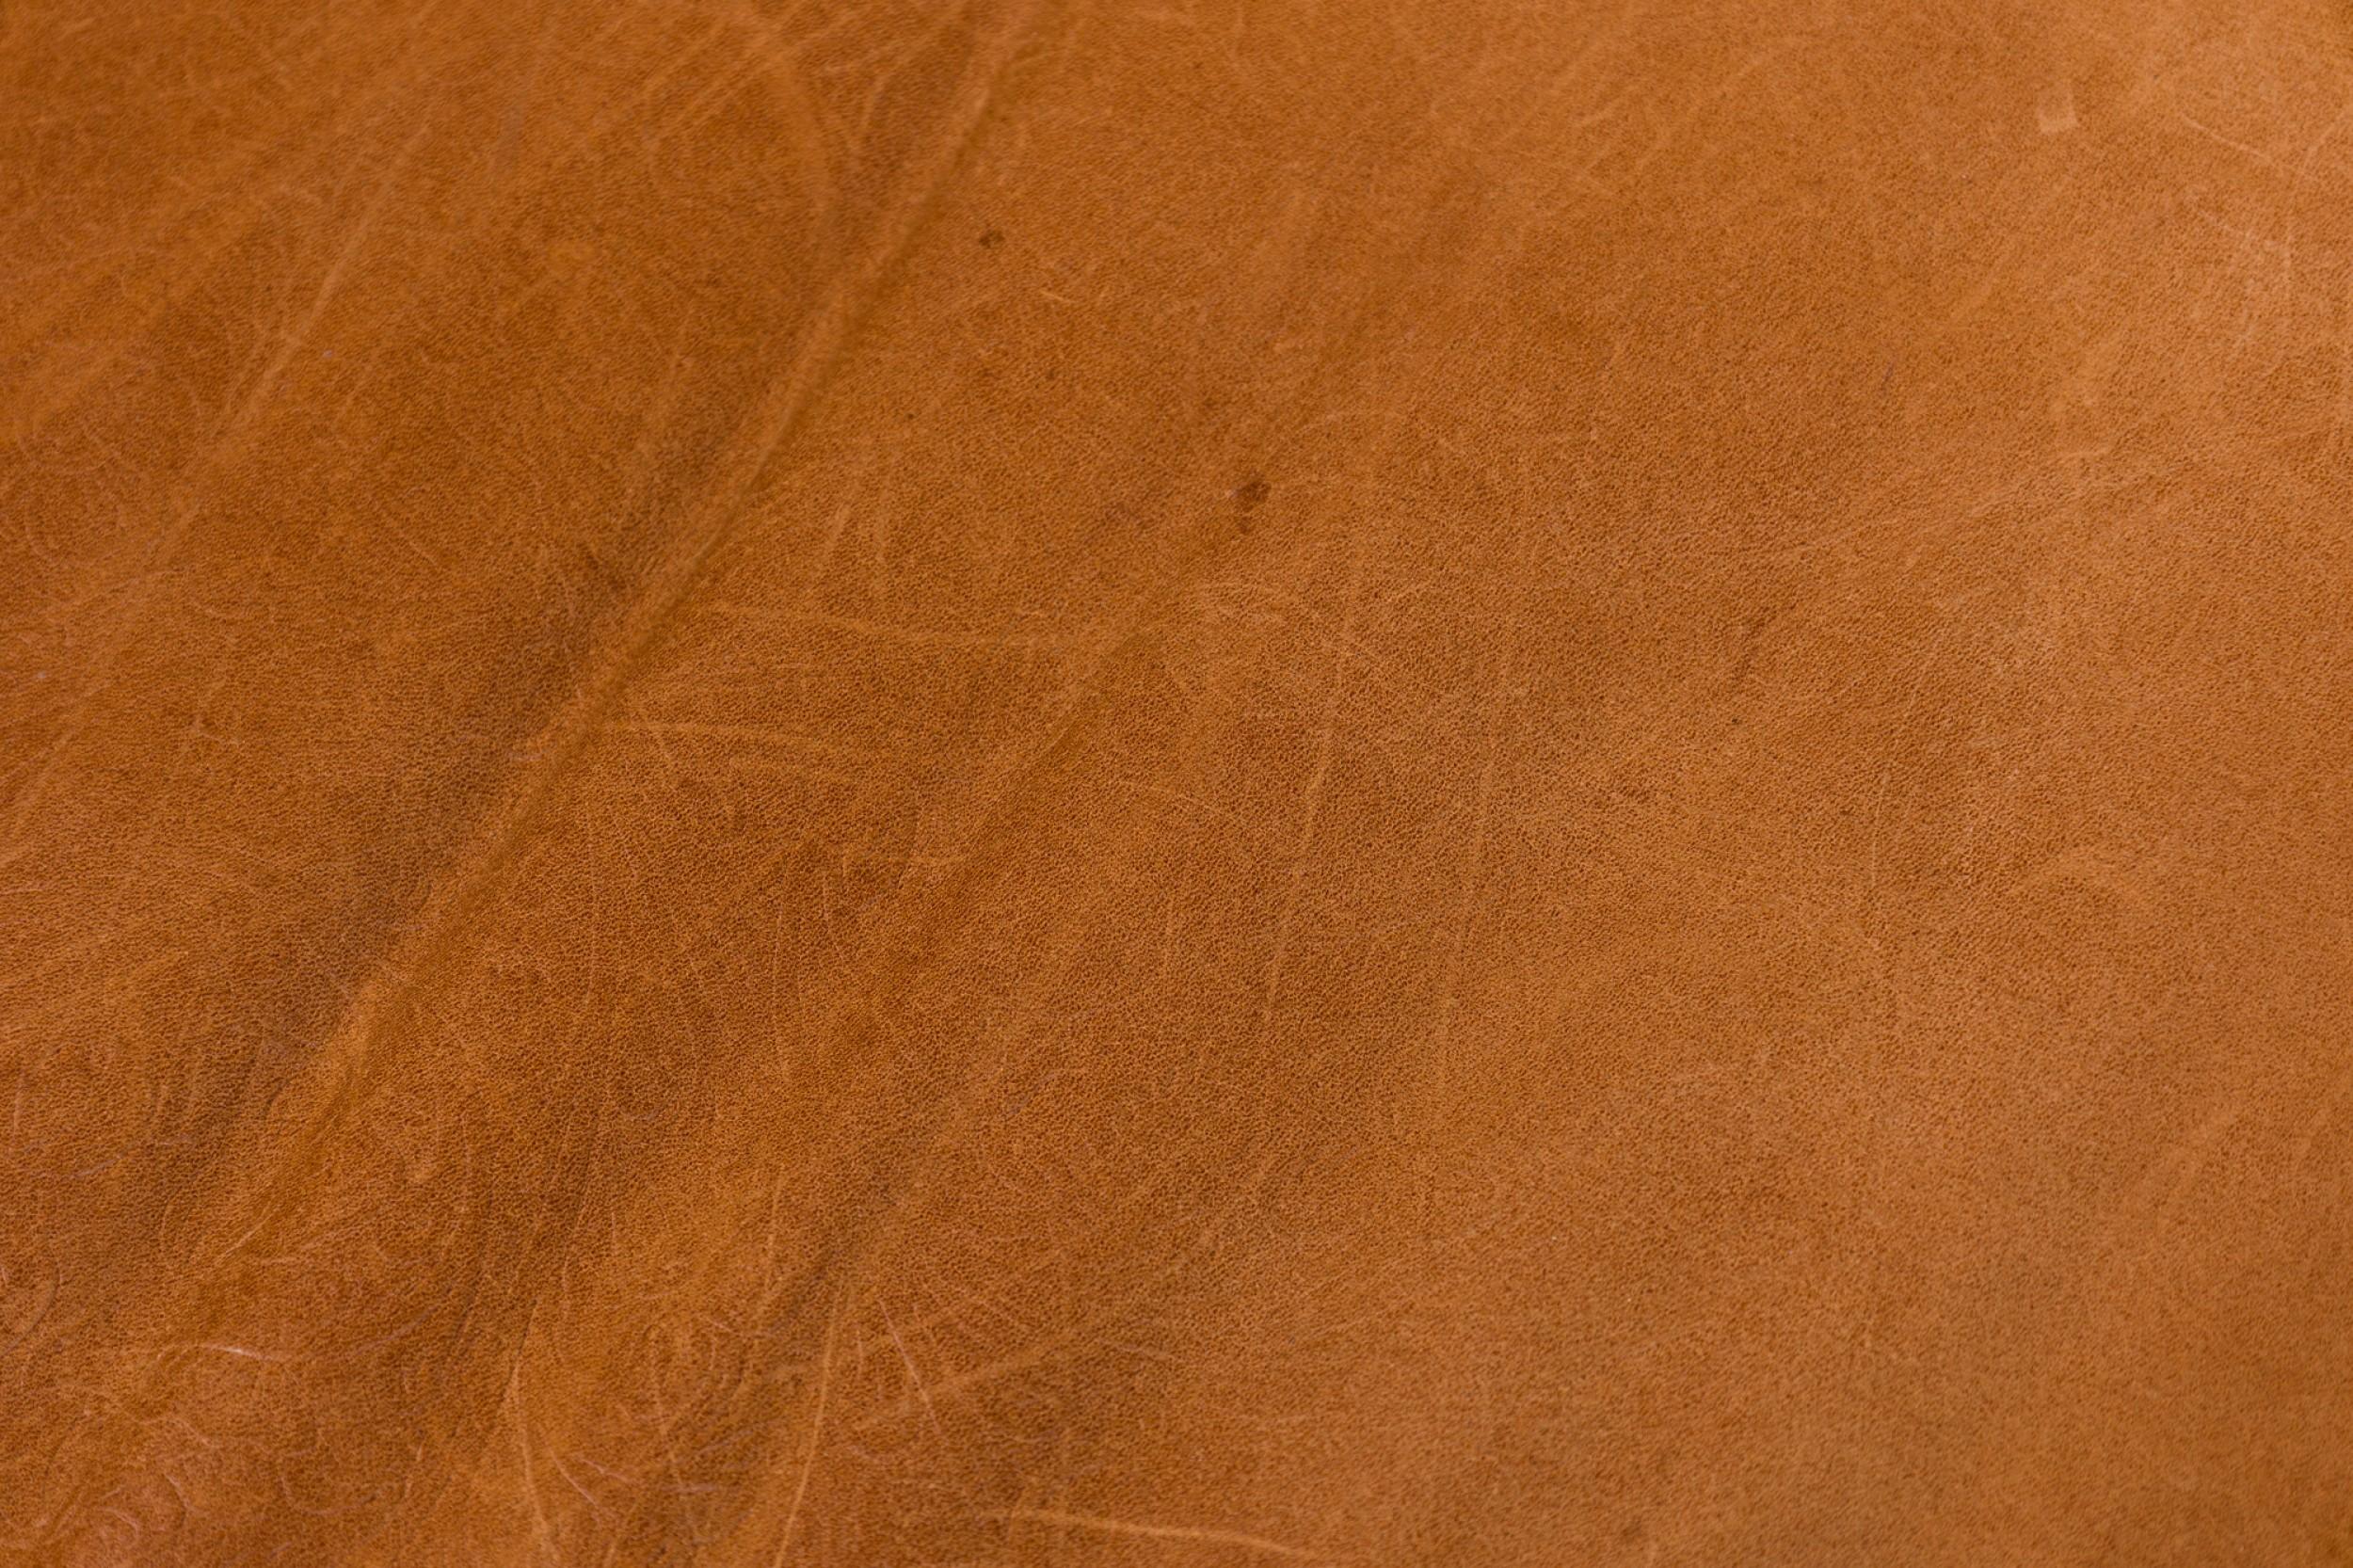 Fauteuil rustique de style Adirondack surdimensionné avec une structure en bois de racines blondes, un dossier en angle avec des lattes verticales en bois rond et un coussin d'assise et de dossier amovible en cuir brun caramel gaufré et fleuri.